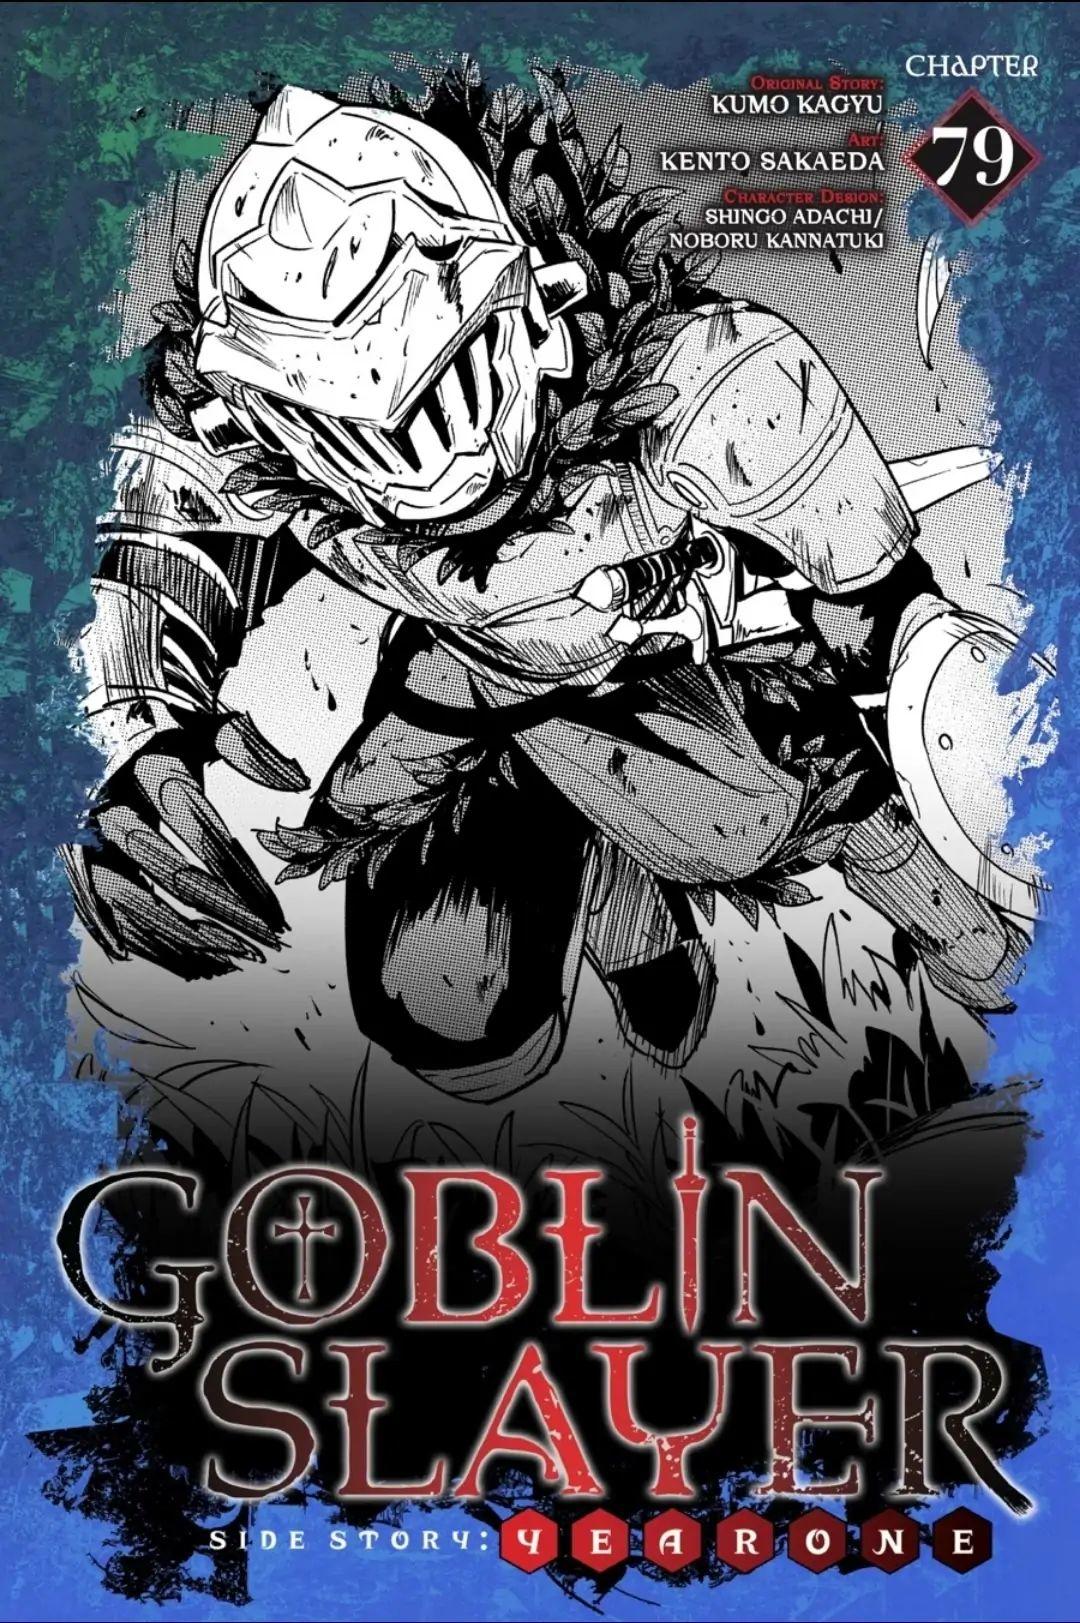 Goblin Slayer, Chapter 84 - Goblin Slayer Manga Online